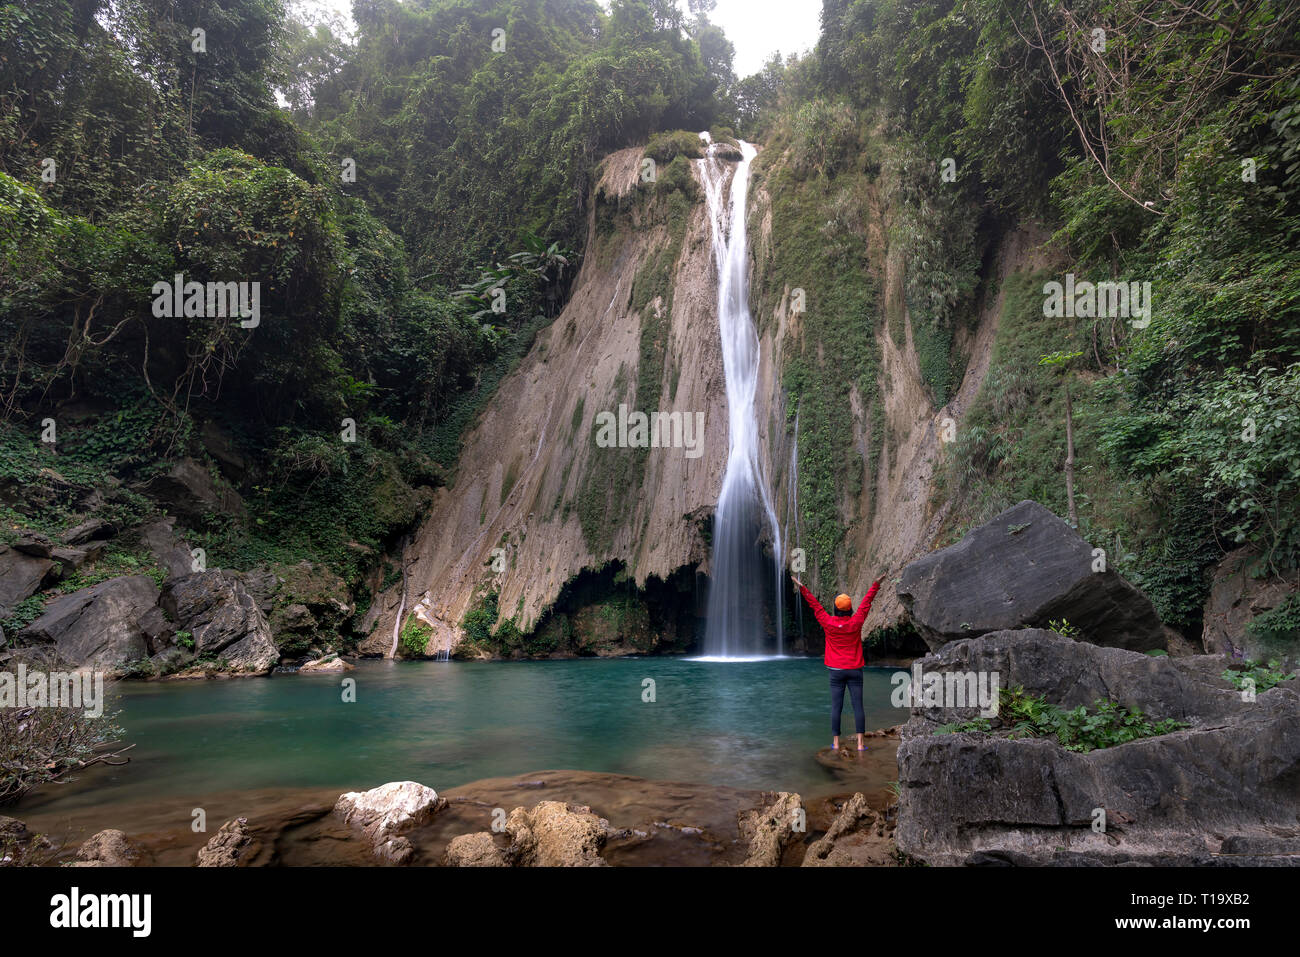 The beauty of Khuoi Nhi waterfall in Thuong Lam, Na Hang, Tuyen Quang Province, Vietnam Stock Photo